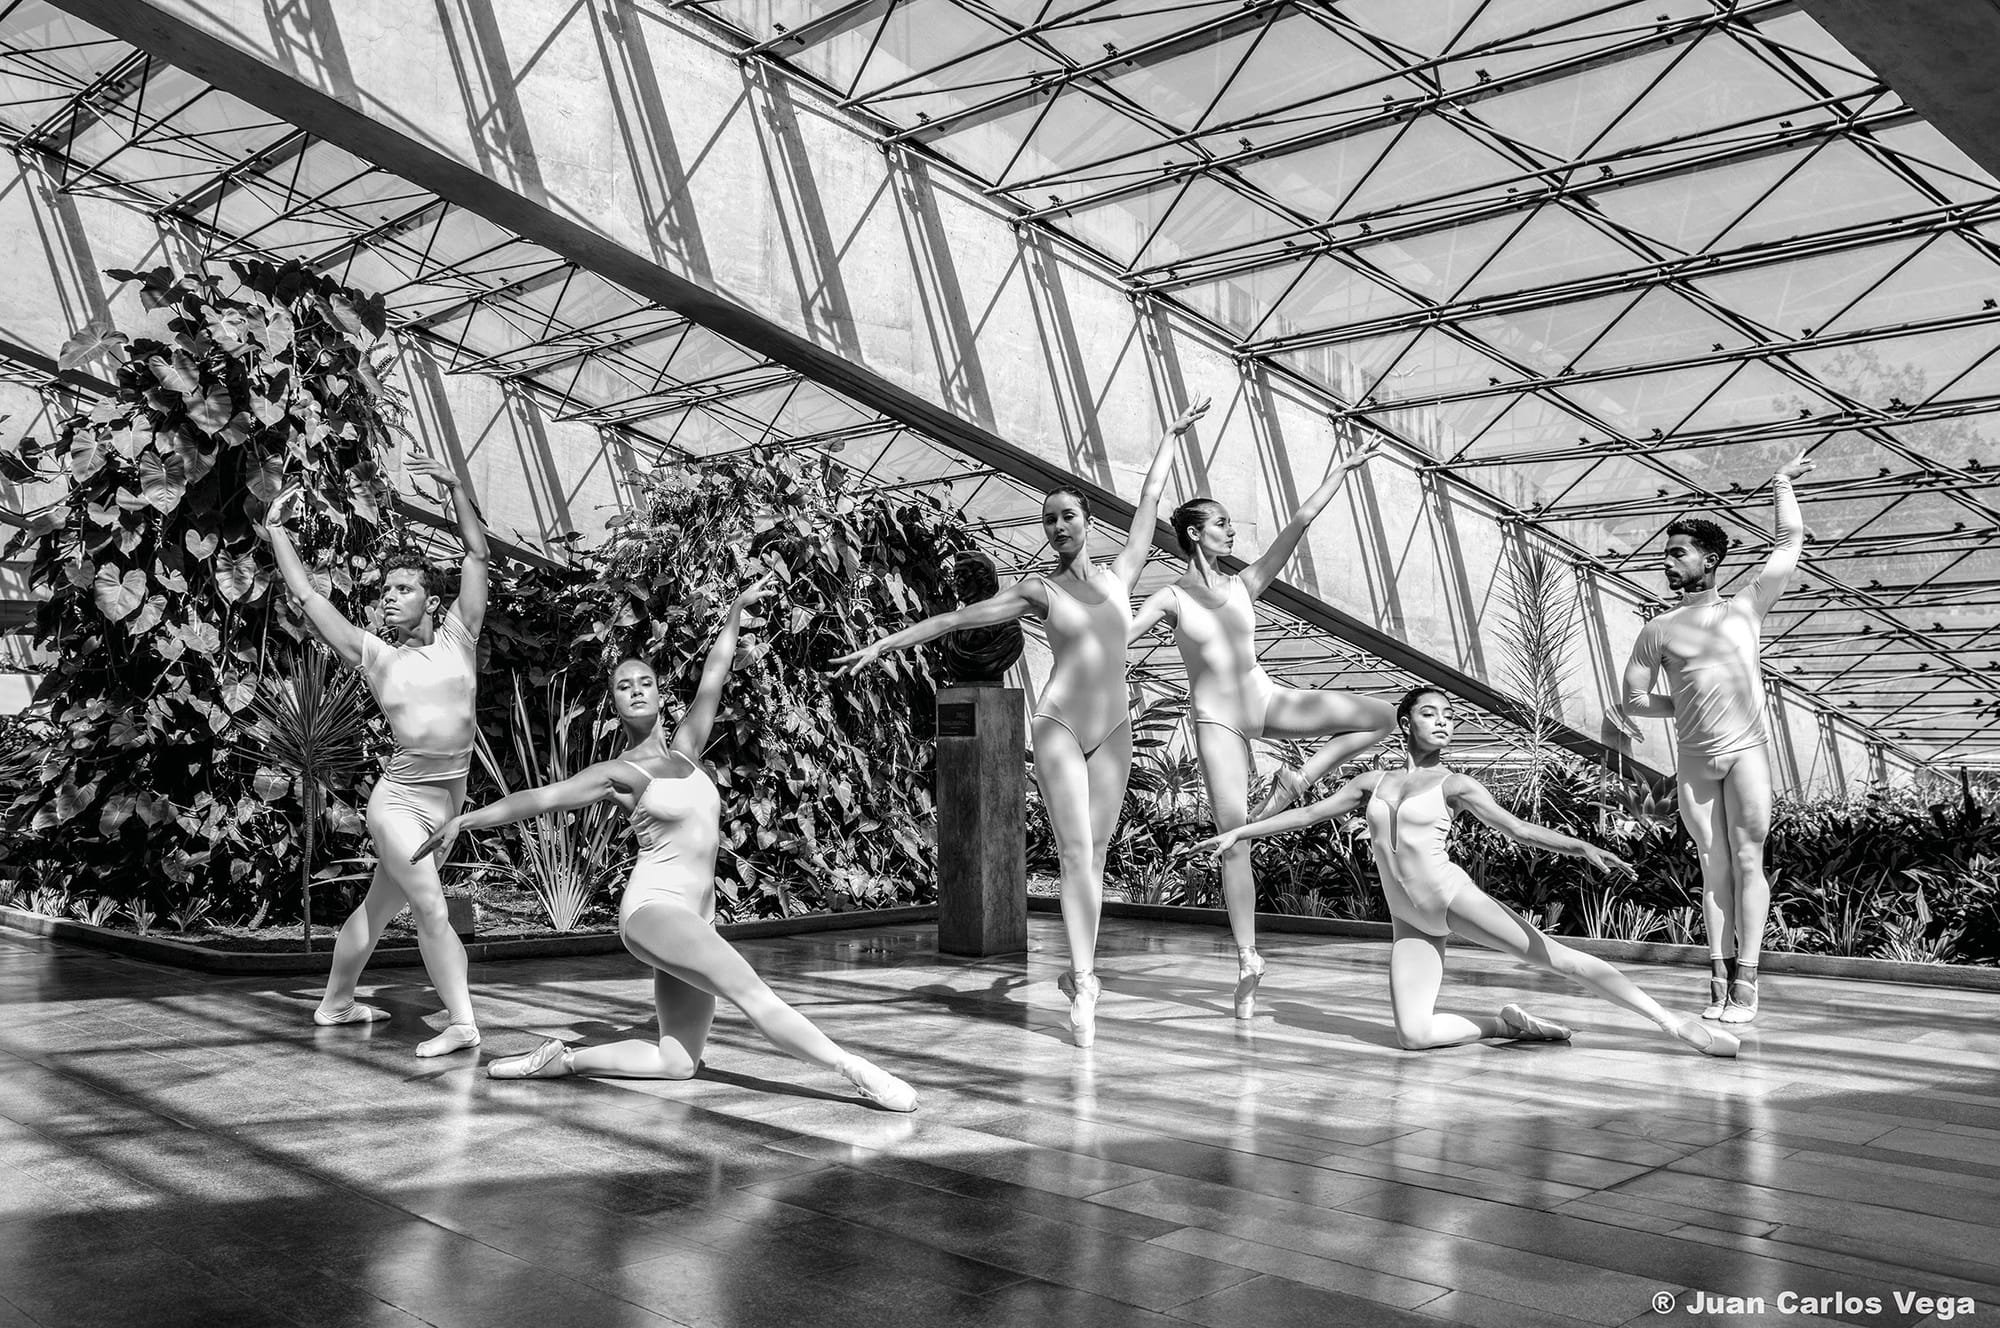 Intervenção dos Bailarinos de Brasília encerra mostra fotográfica 'Niemeyer - dança by Vega'